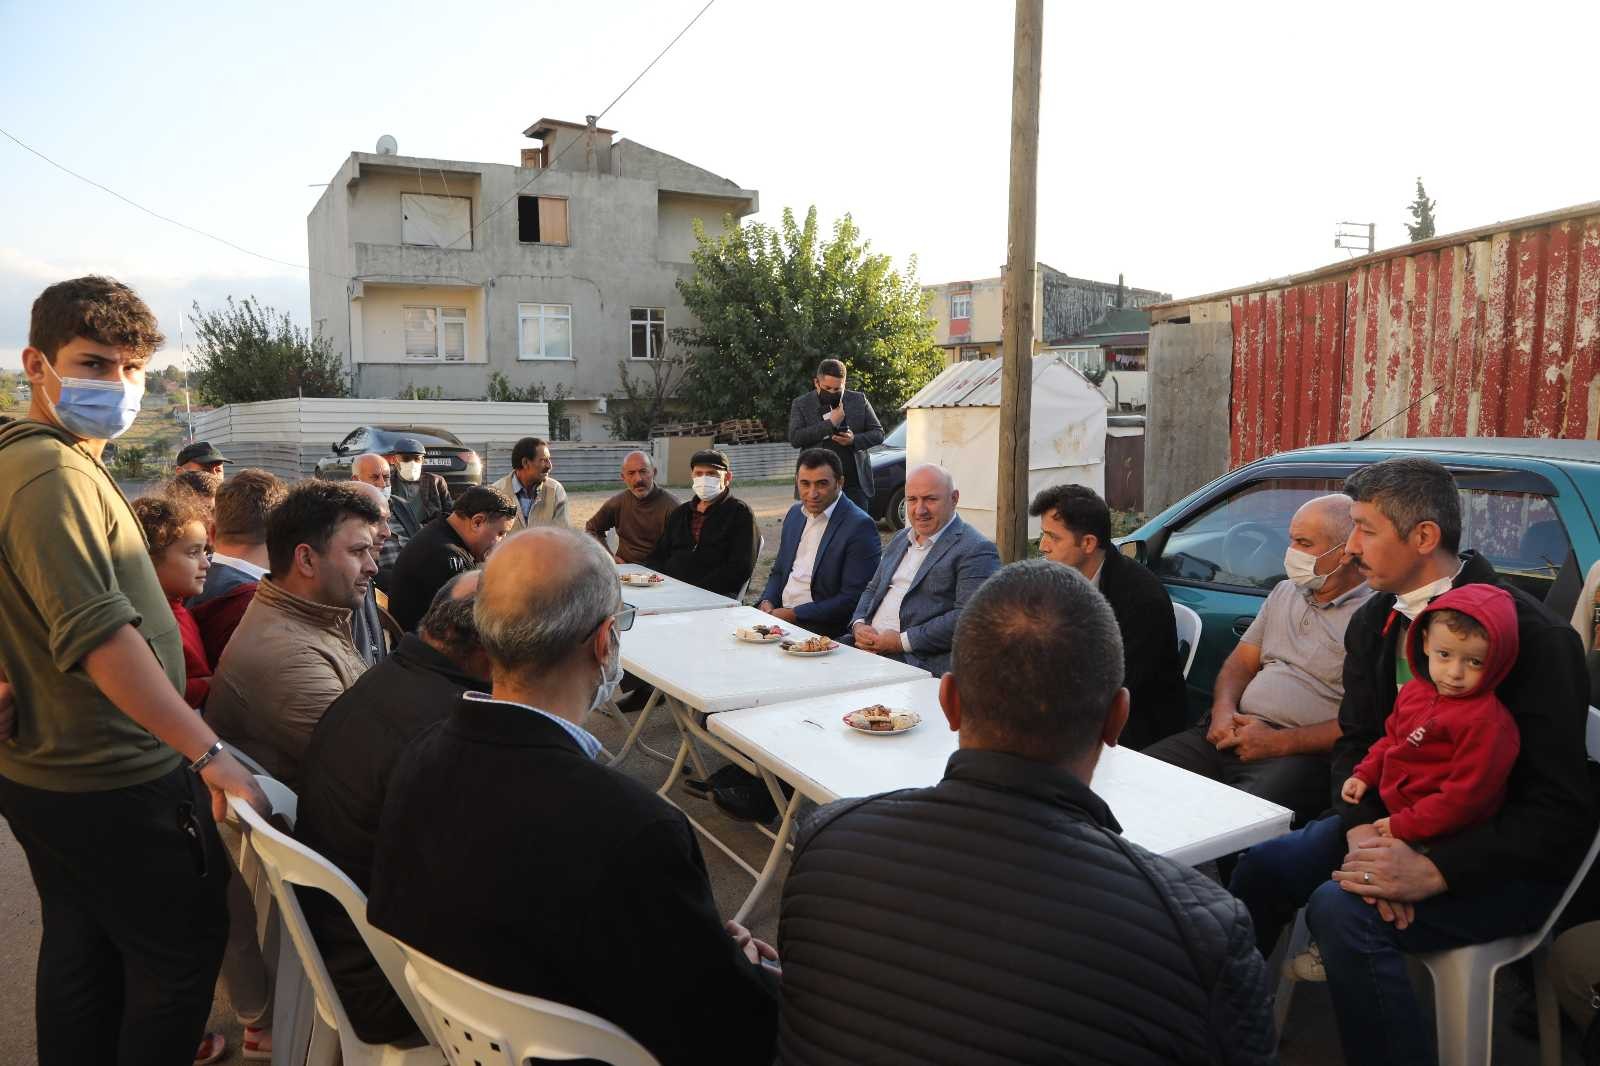 Başkan Bıyık, Çözüm üreten bir belediye anlayışıyla çalışıyoruz” #kocaeli